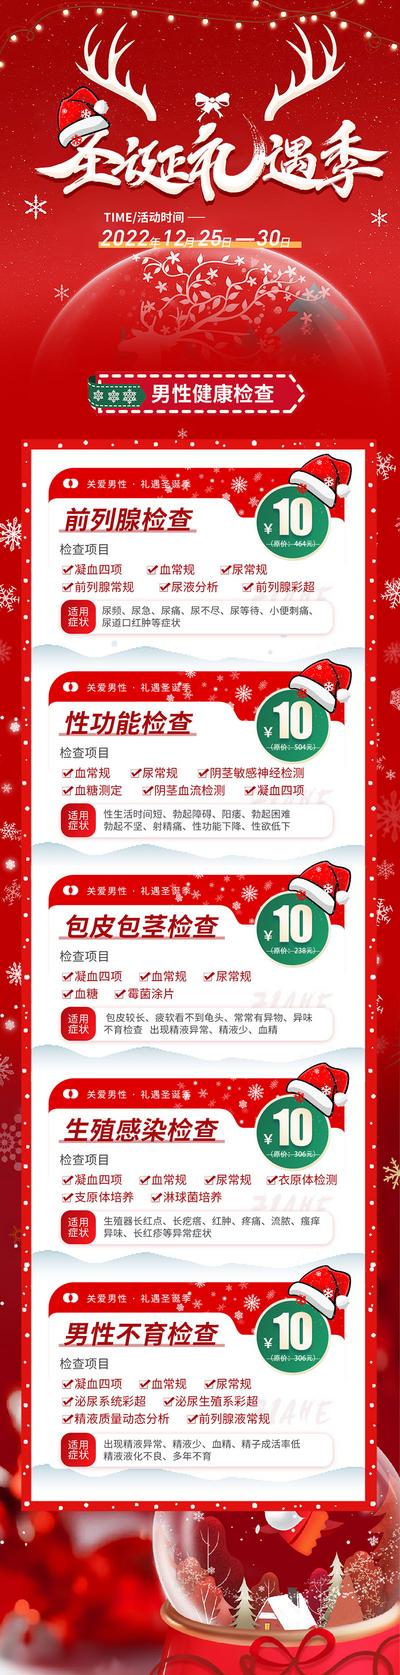 南门网 广告 海报 节日 圣诞 专题 促销 套餐 医院 体检 检查